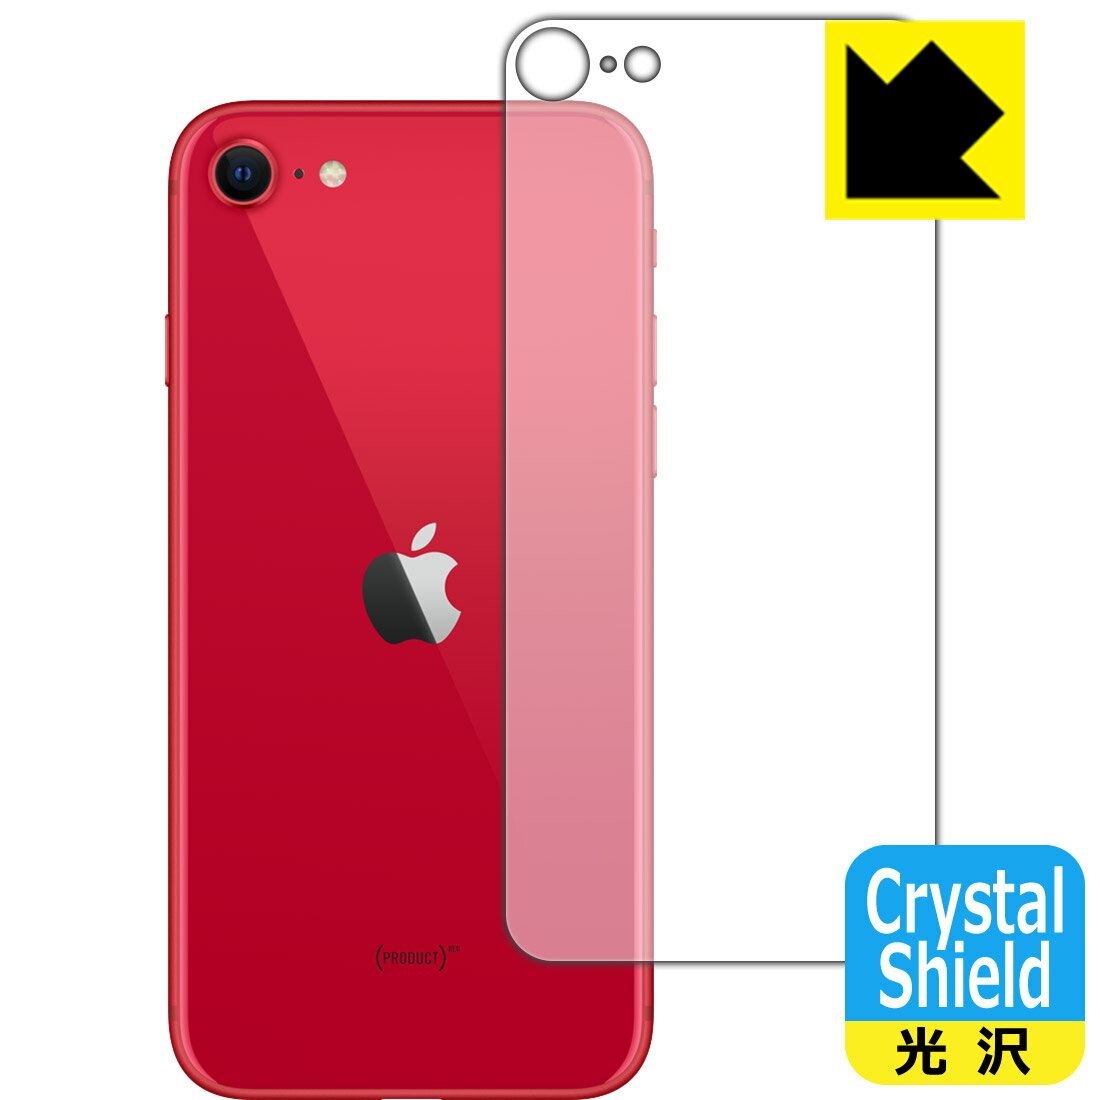 Crystal Shield iPhone SE (第2世代) 背面のみ 【O型】 (3枚セット) 日本製 自社製造直販